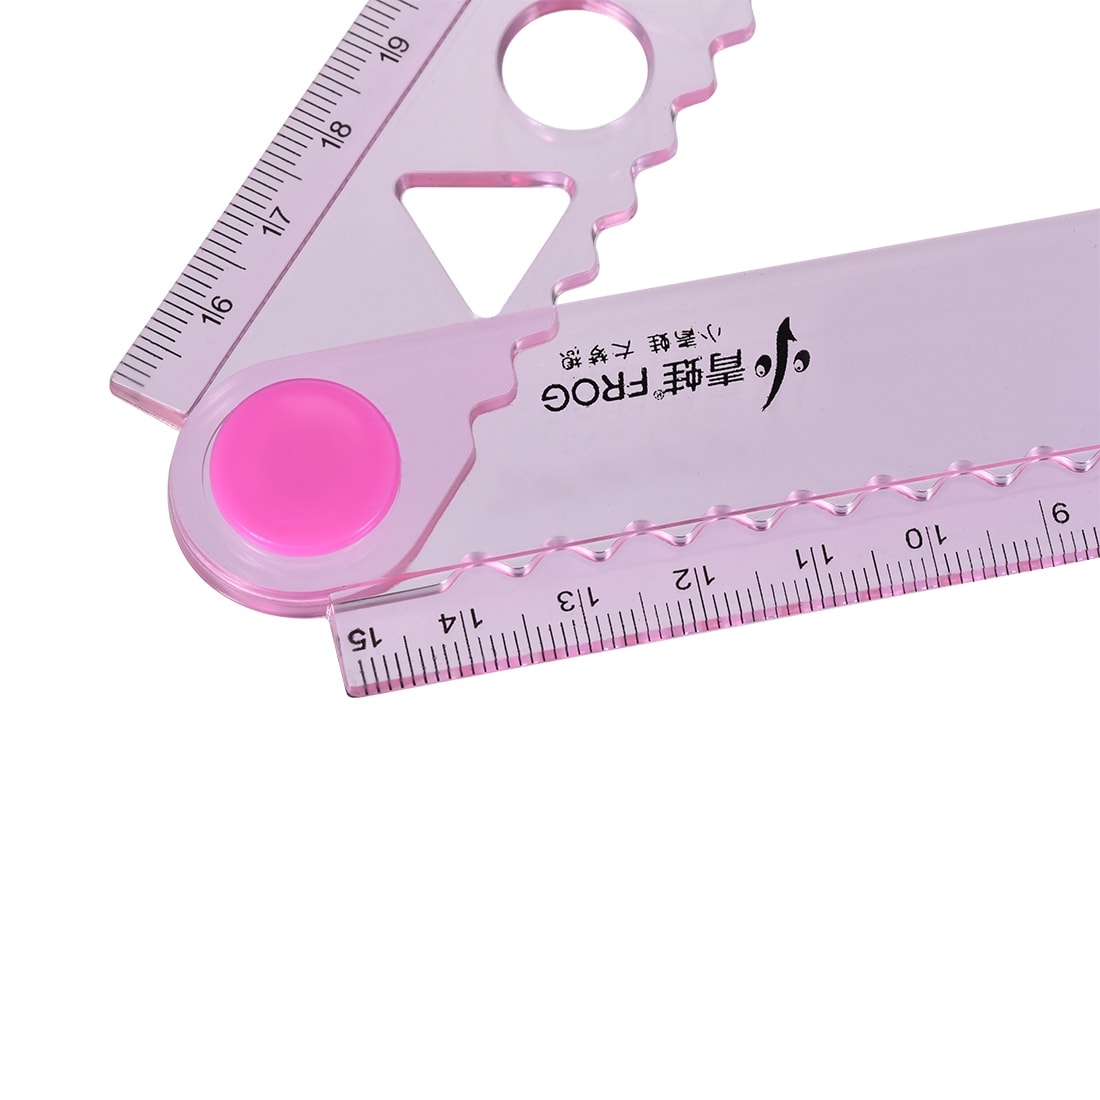 Pen+gear PVC Flexi Metric Ruler - Pink - 12 in